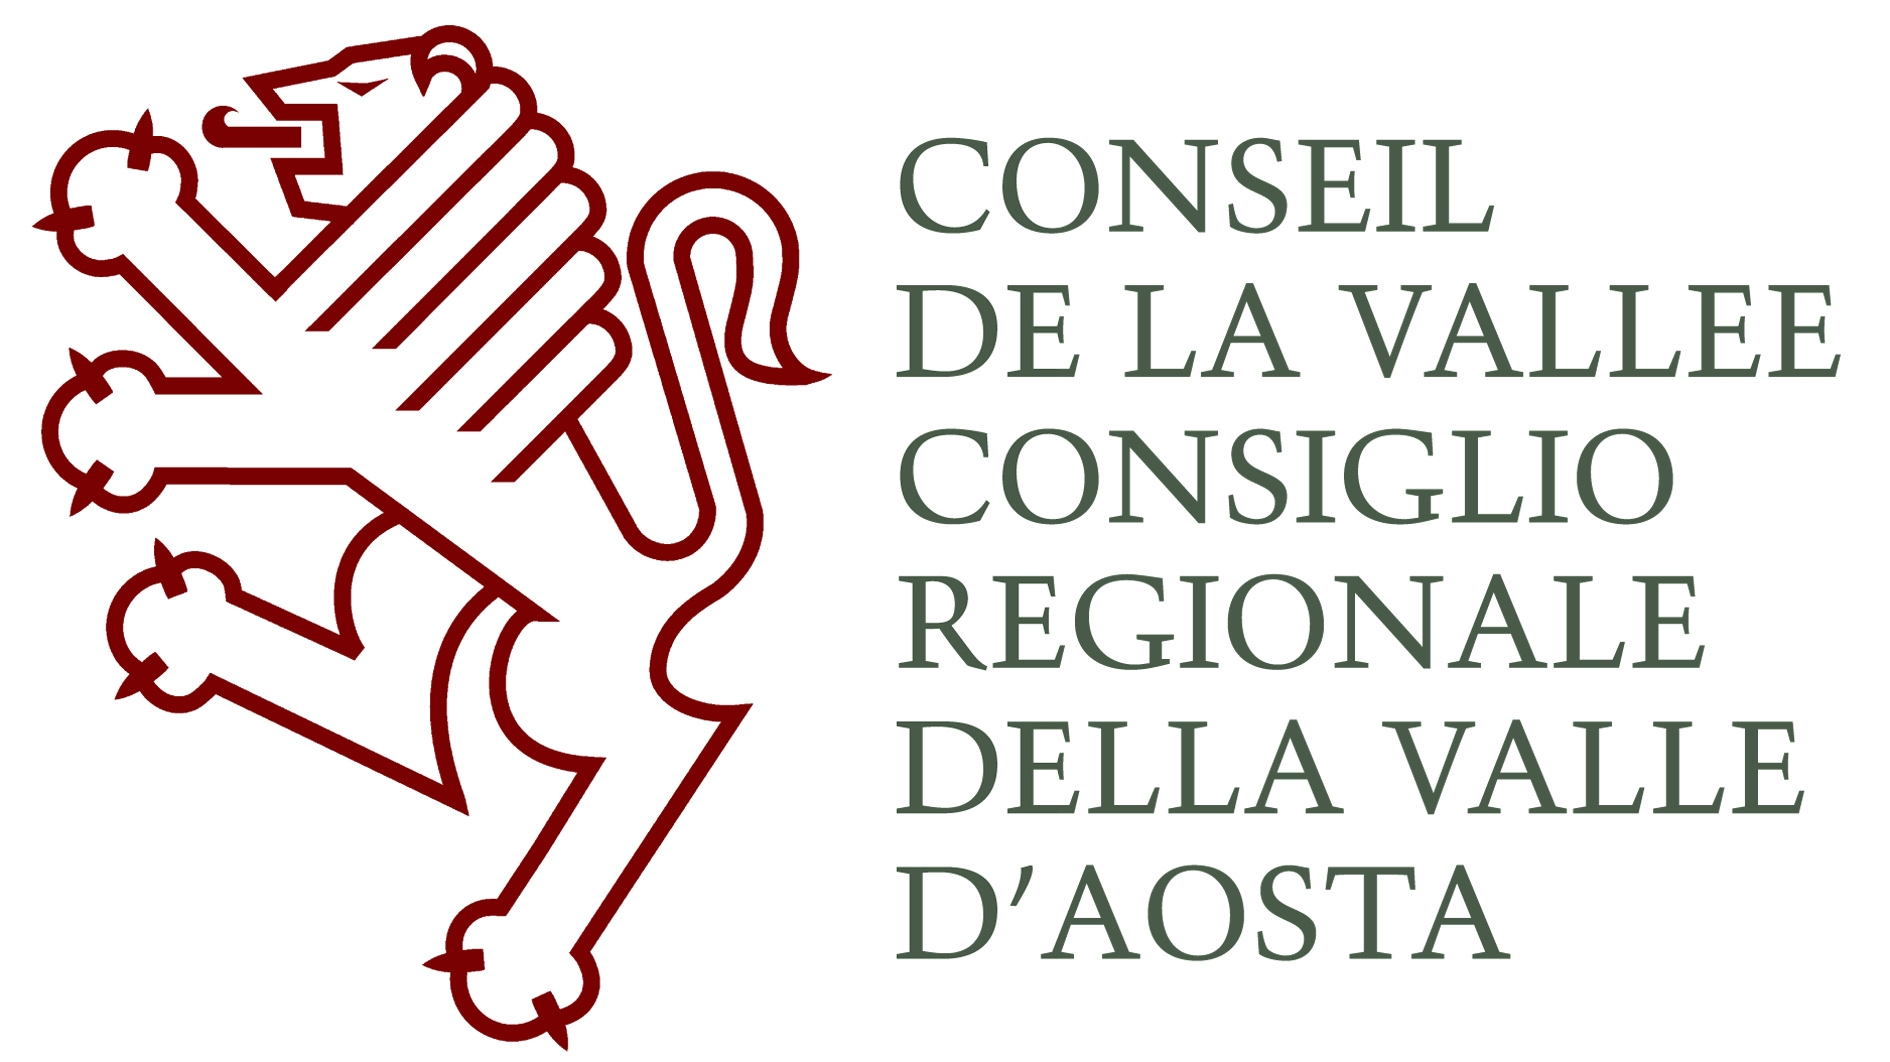 Conseil de la Vallée Consiglio regionale della Valle D'Aosta